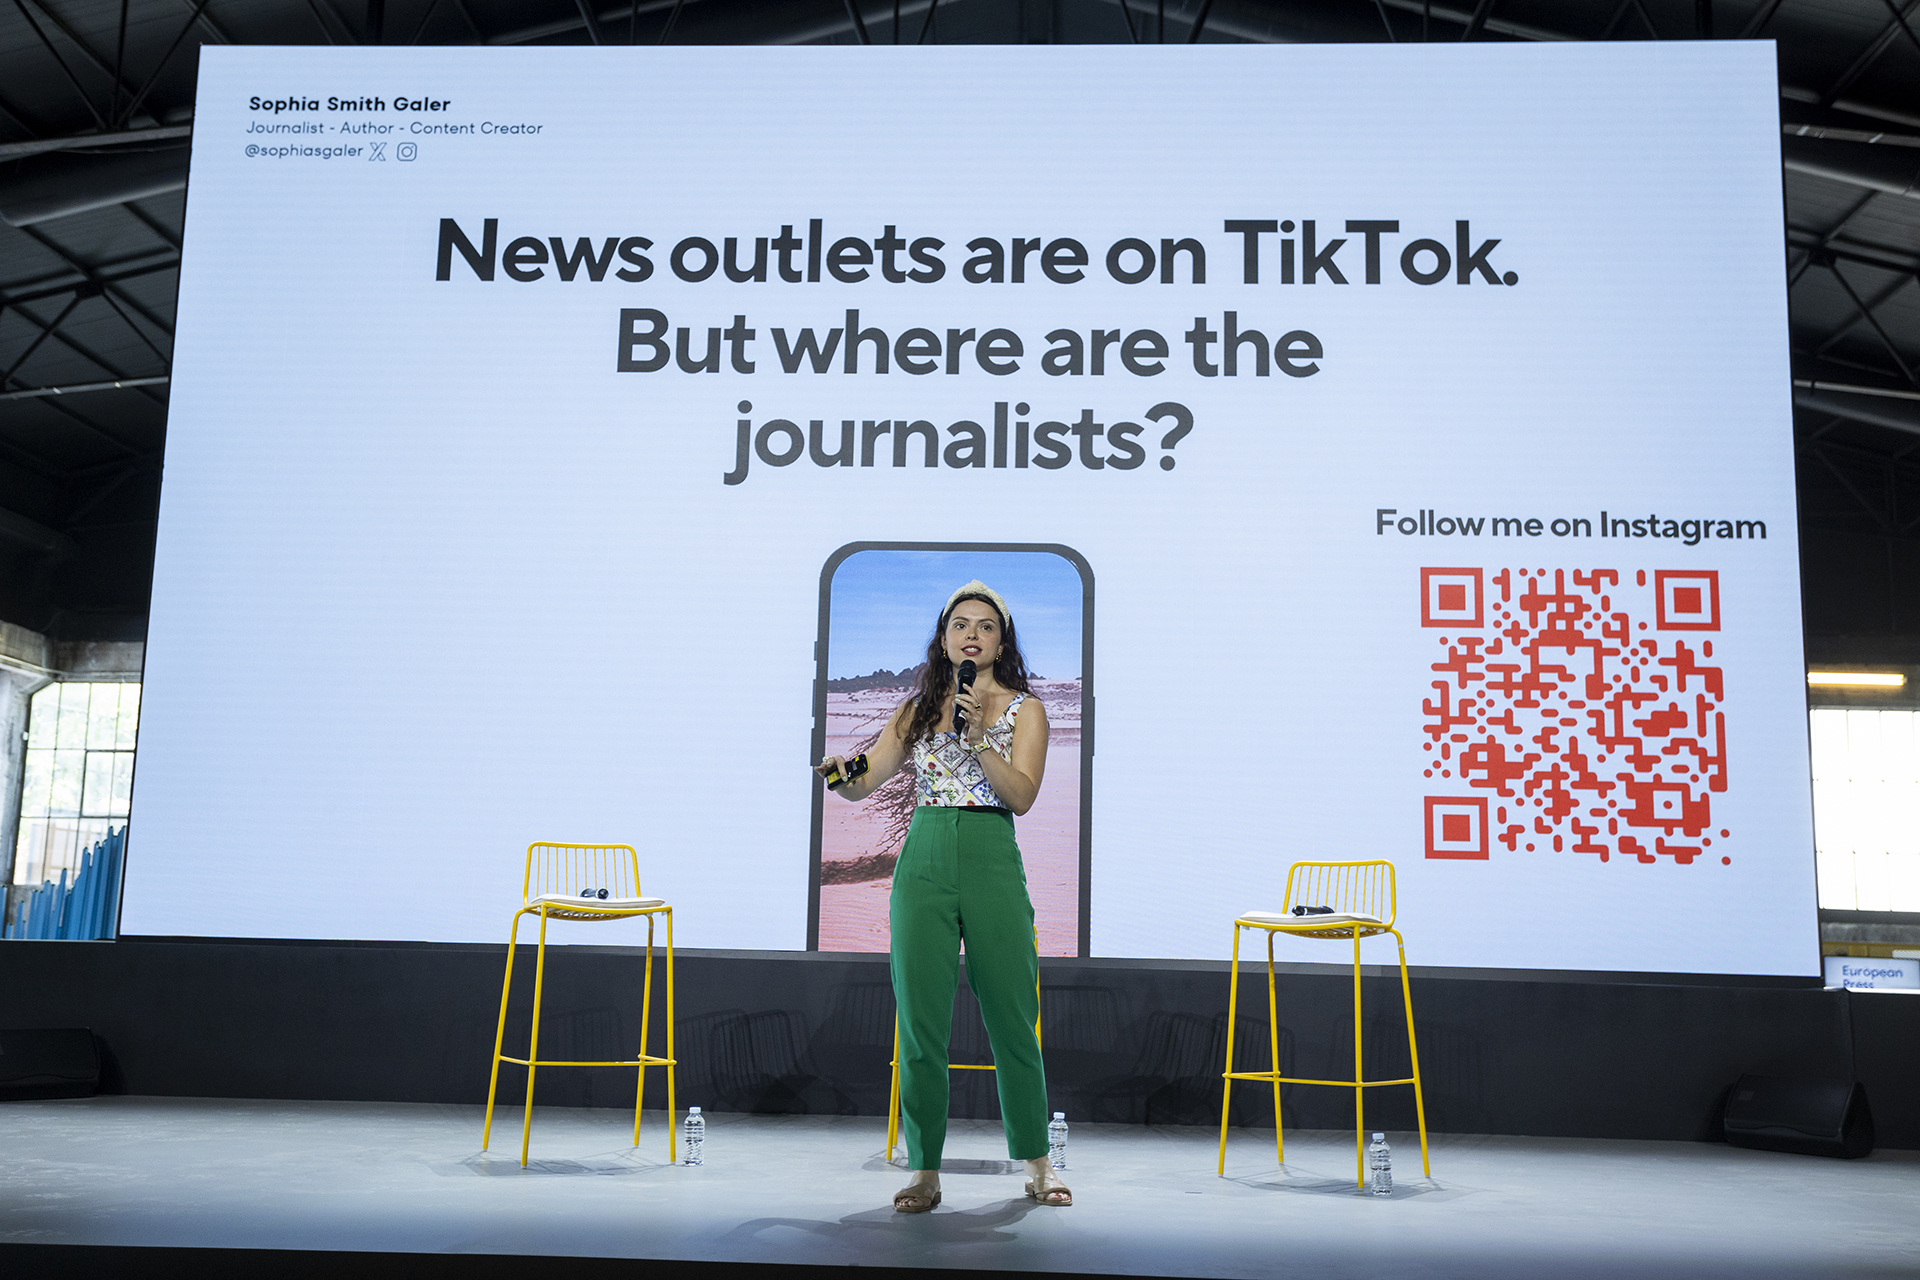 Η Sophia Smith Galler στην κεντρική ομιλία της "Τα ειδησεογραφικά brands είναι στο TikTok - αλλά πού είναι οι δημοσιογράφοι;" στέκεται στο κέντρο της σκηνής φορώντας ένα σκουρο πράσινο παντελόνι, μια μπλούζα με λουλούδια και κορδέλα για τα μαλλιά. Στην οθόνη πίσω της εμφανίζεται ο τίτλος της ομιλίας της και ένας κωδικός QR που οδηγεί στον λογαριασμό της στο Instagram.